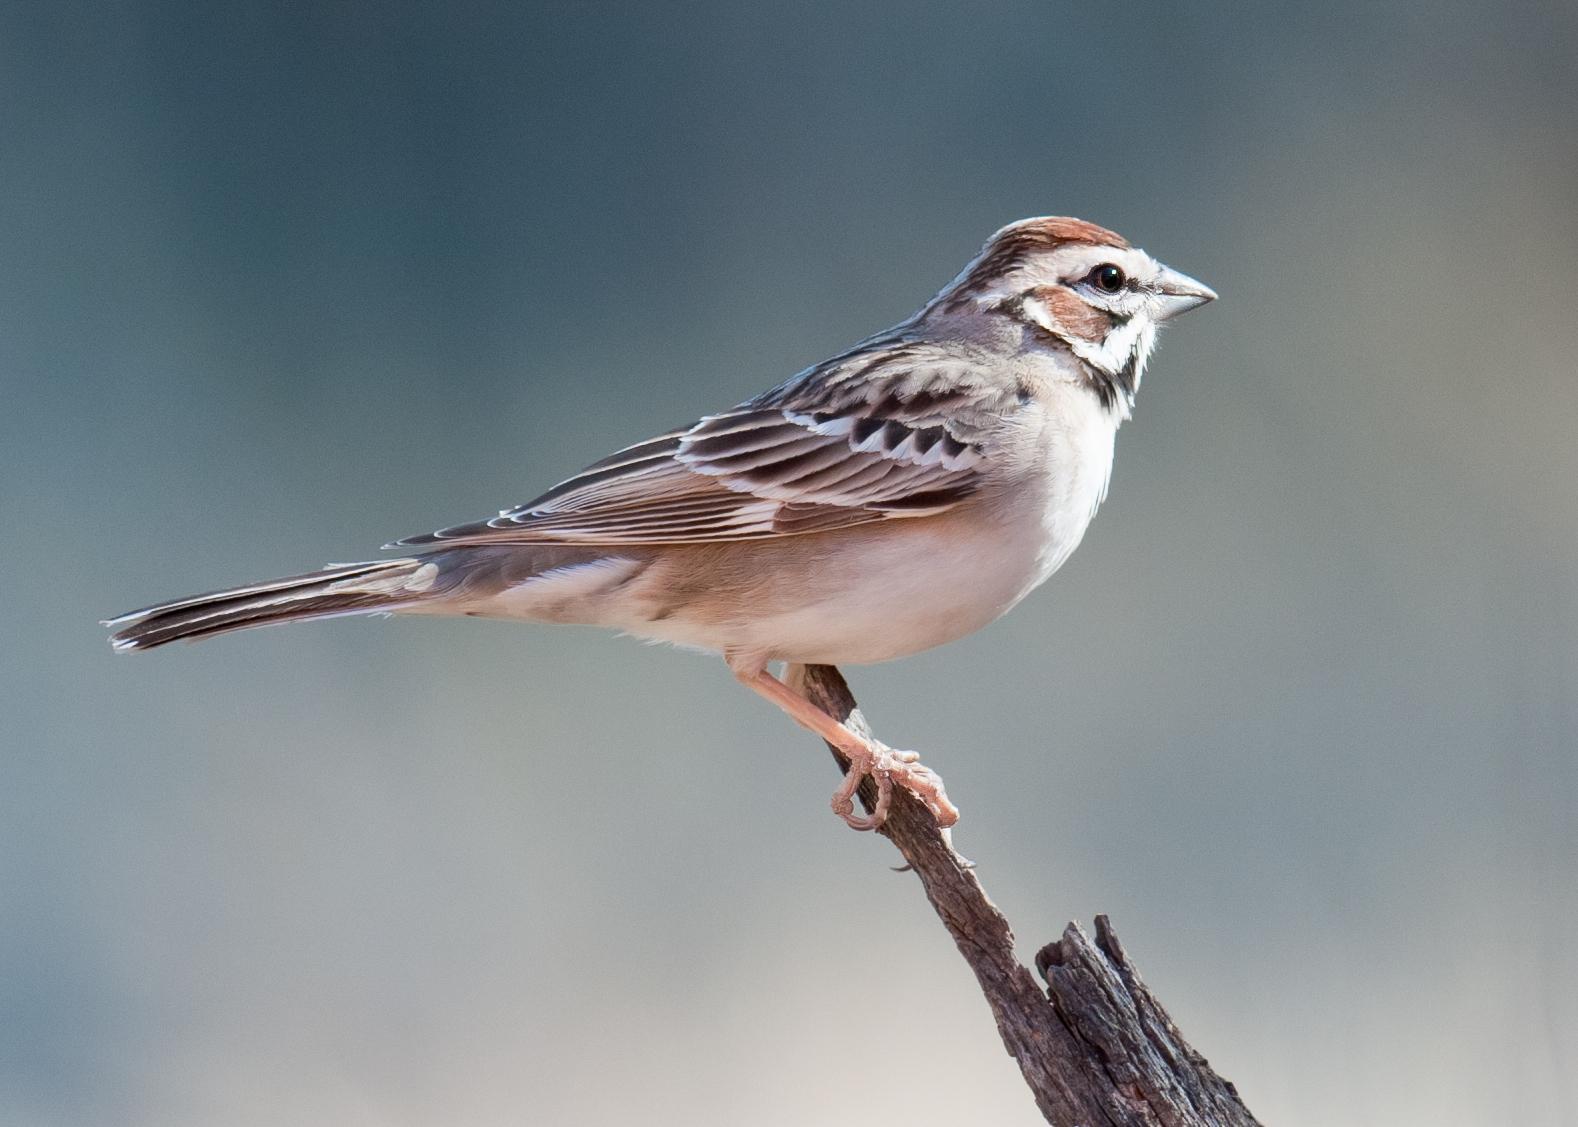 Lark Sparrow Photo by Mason Rose